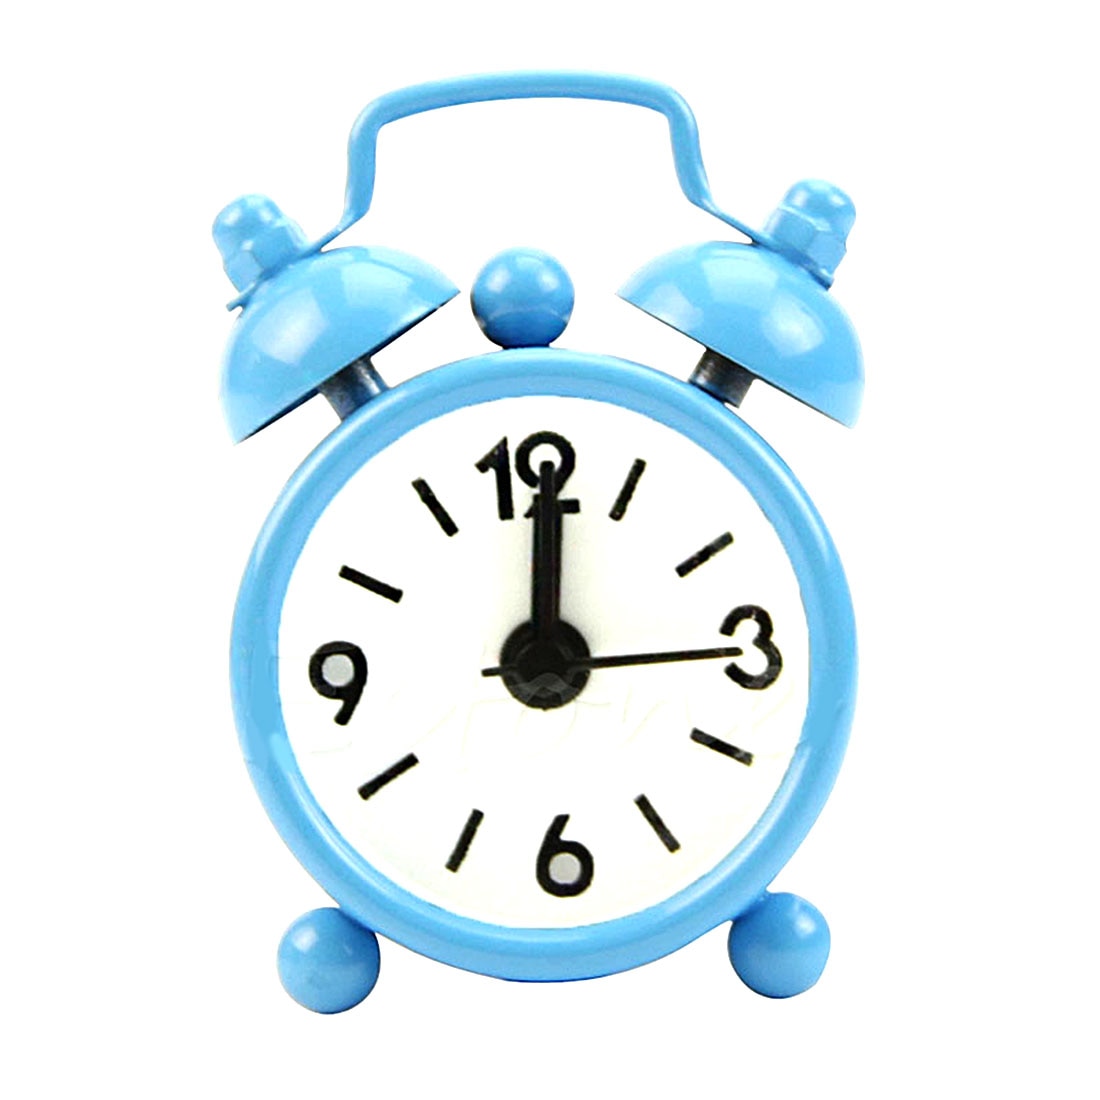 Di modo Nuova Casa Esterno Portatile Sveglio Bello Del Fumetto Quadrante Numero Tondo Desk Alarm Clock Mini